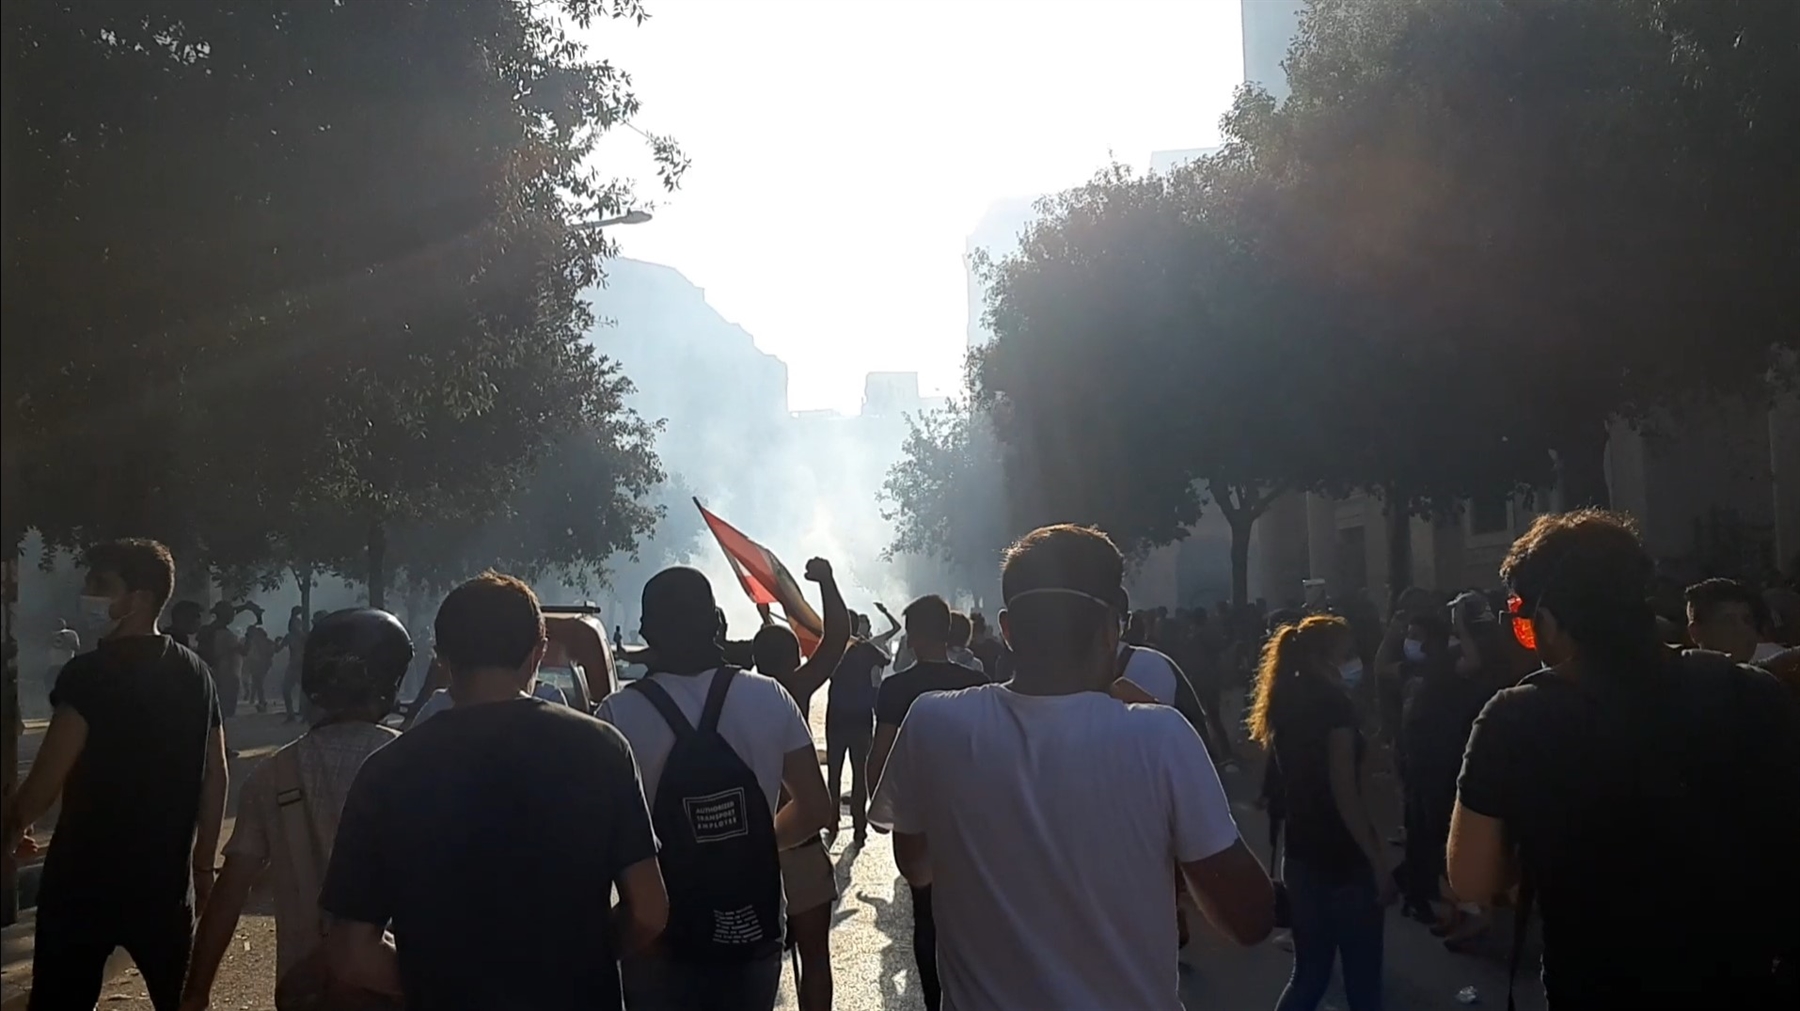 مظاهرة يوم السبت 8 آب تخللها إطلاق الغاز المسيل للدموع والرصاص الحي على المتظاهرين الذين أصيب منهم ما يزيد عن 700 شخص (تصوير: دنيا سلامة)